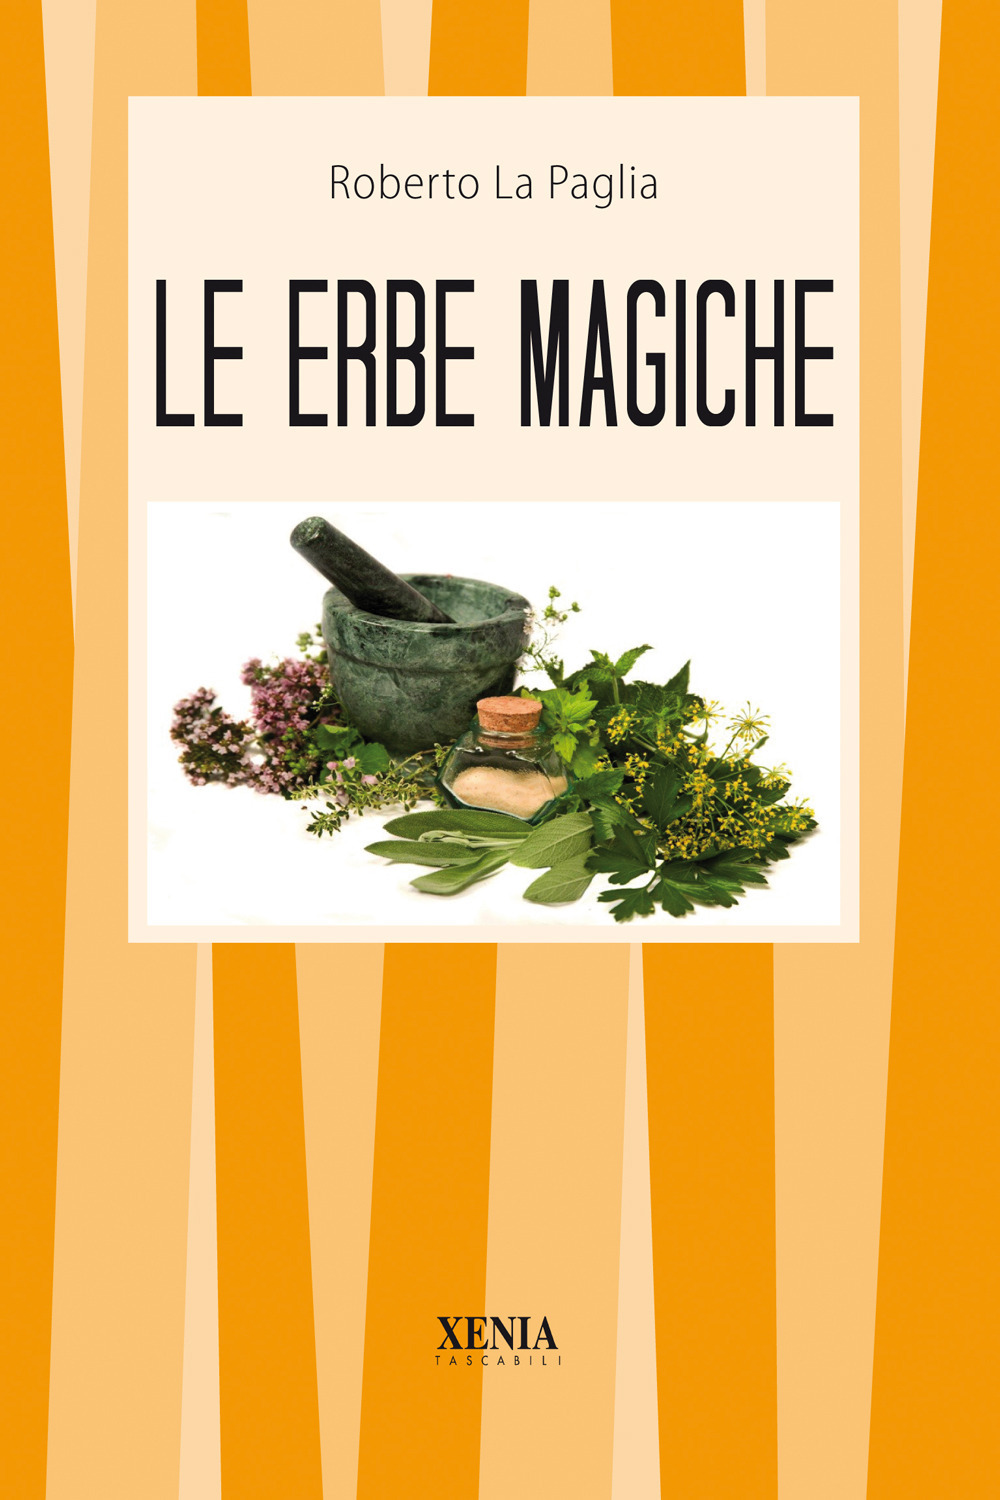 Image of Le erbe magiche